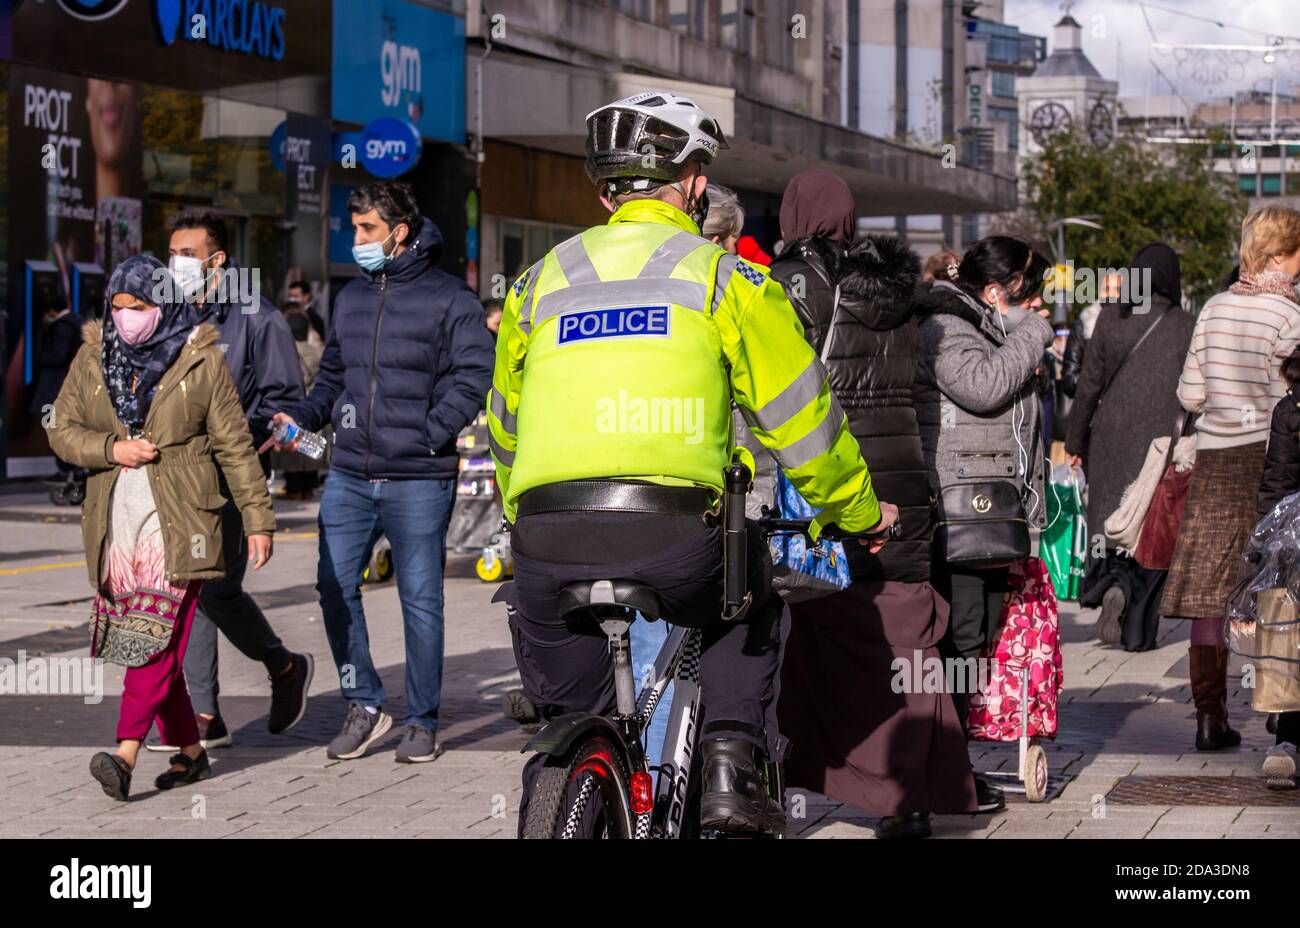 Polizist fährt Fahrrad durch Birmingham High Street Menschenmenge Stockfoto